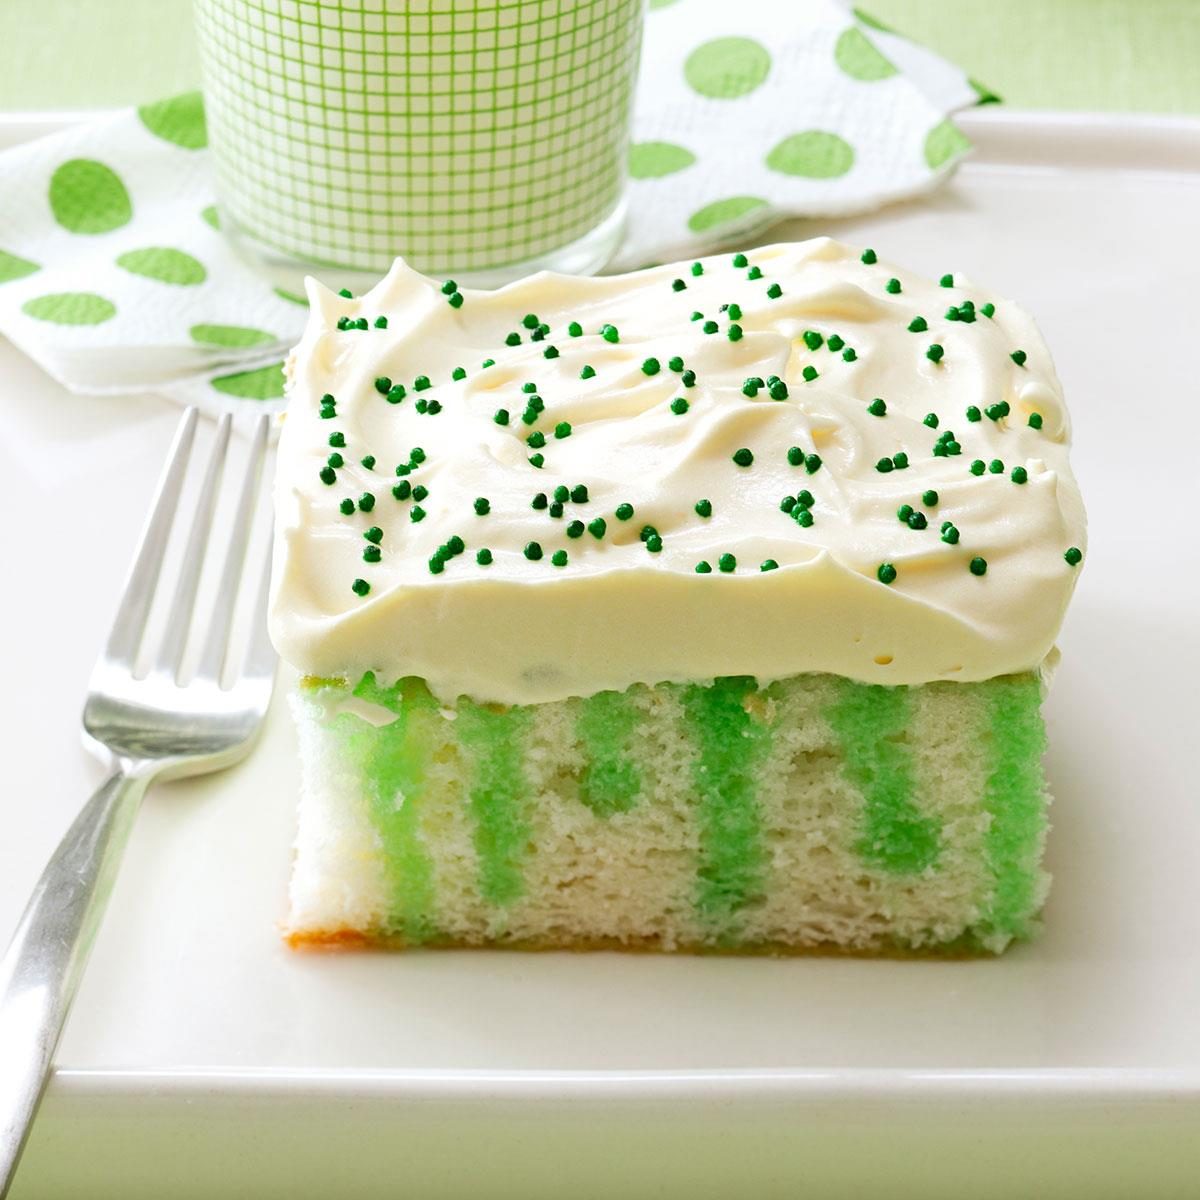 Wearing o’ Green Cake